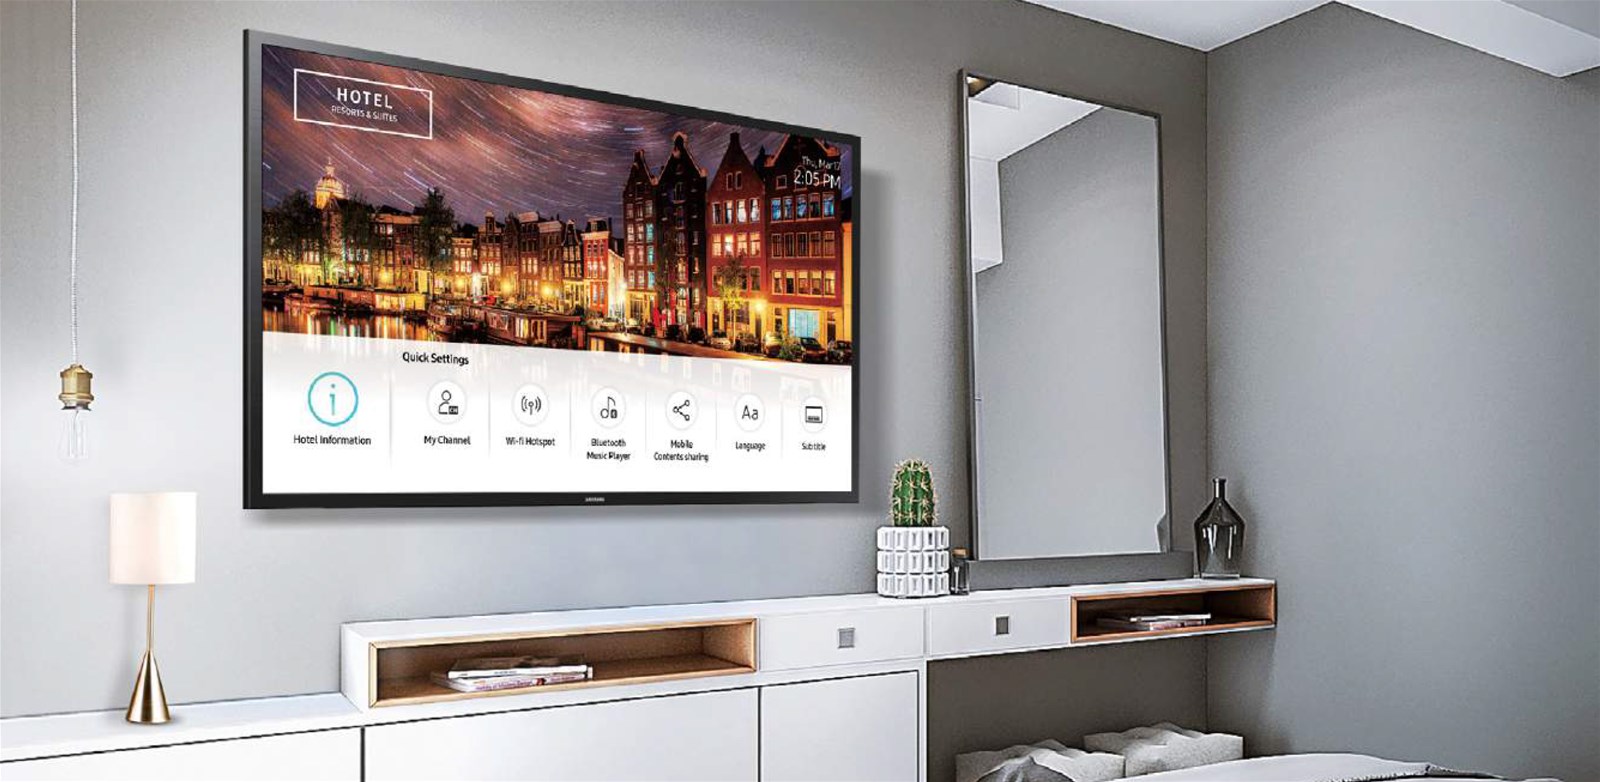 Hotel tivi thông minh dành cho ngành khách sạn